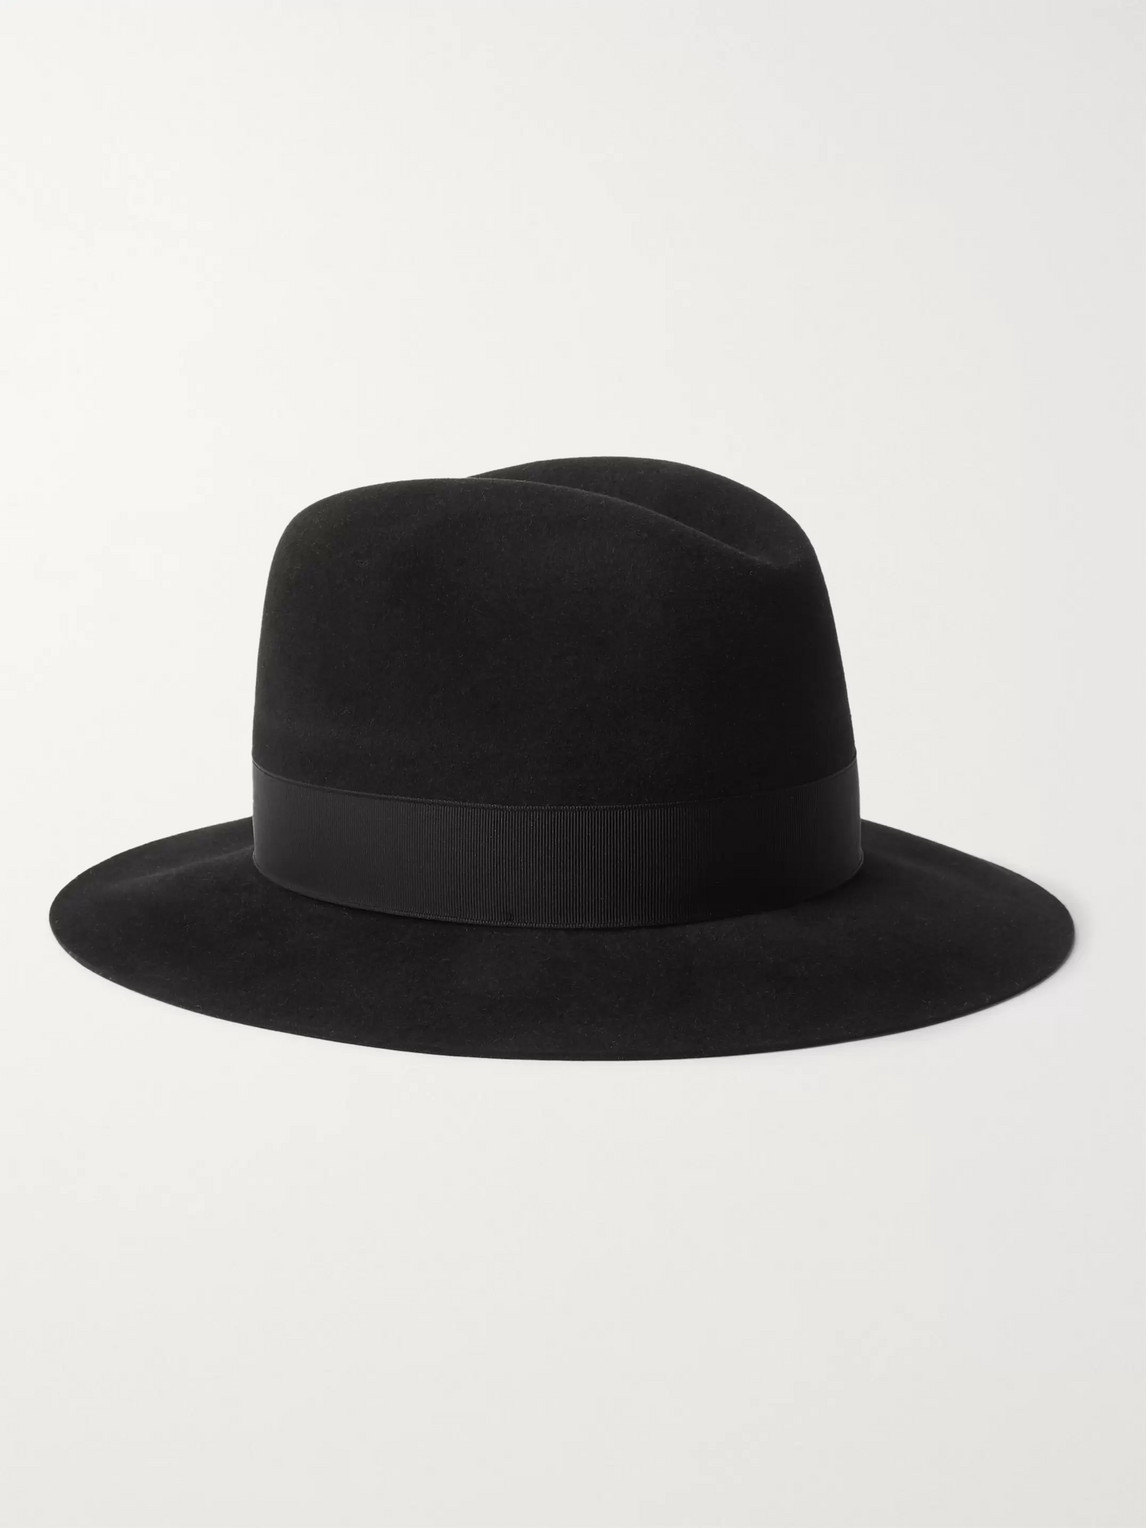 Lock & Co Hatters Haydock Rabbit-felt Hat In Black